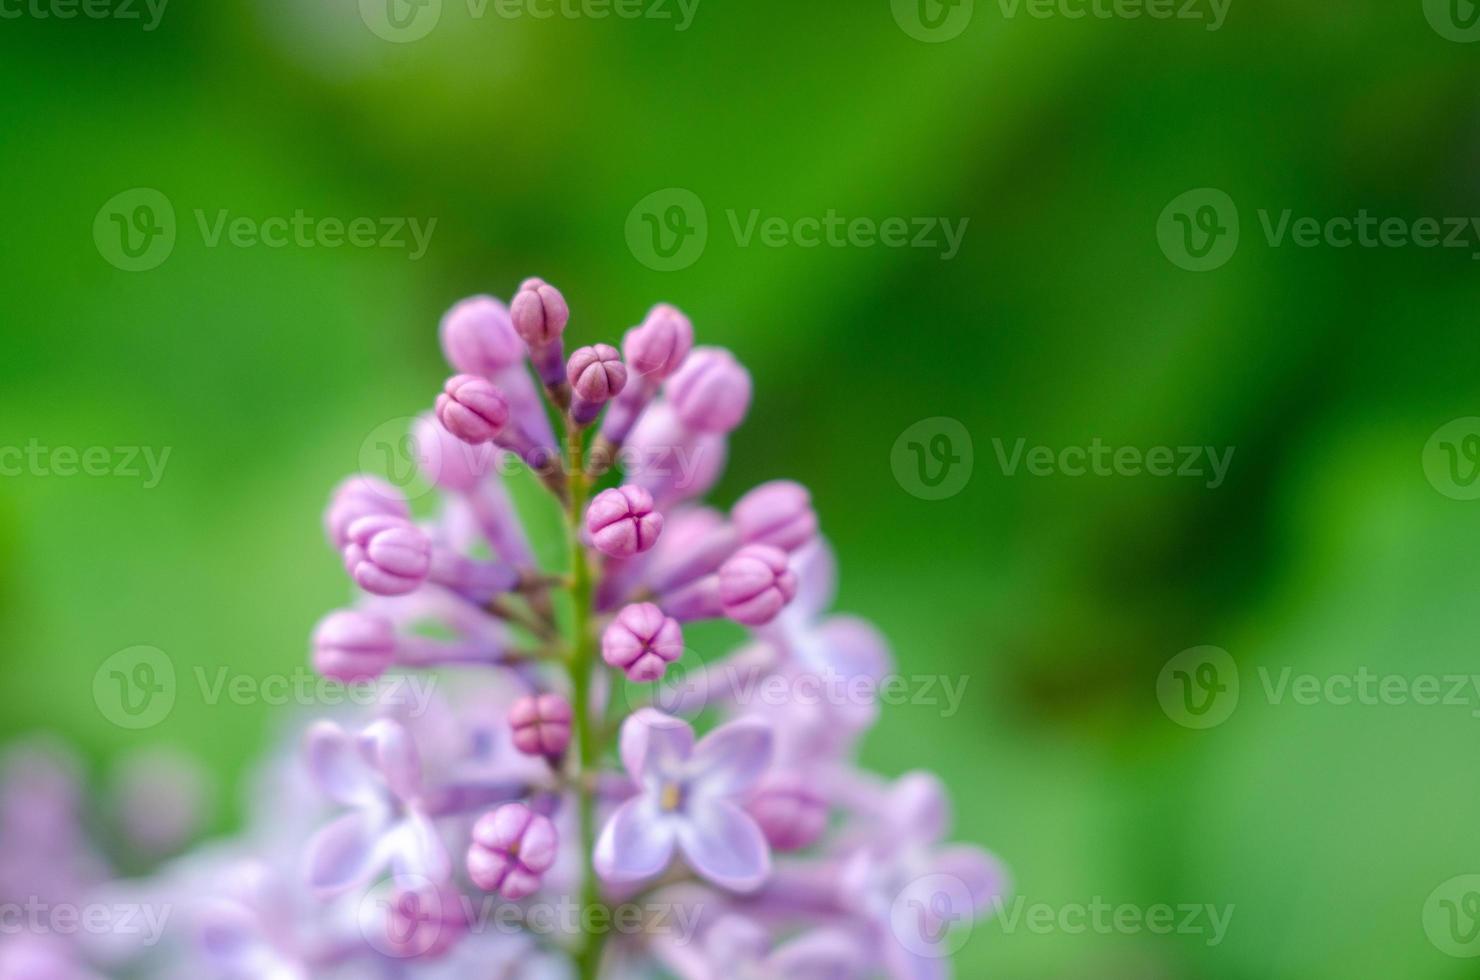 bei fiori di lillà viola in fiore al sole foto